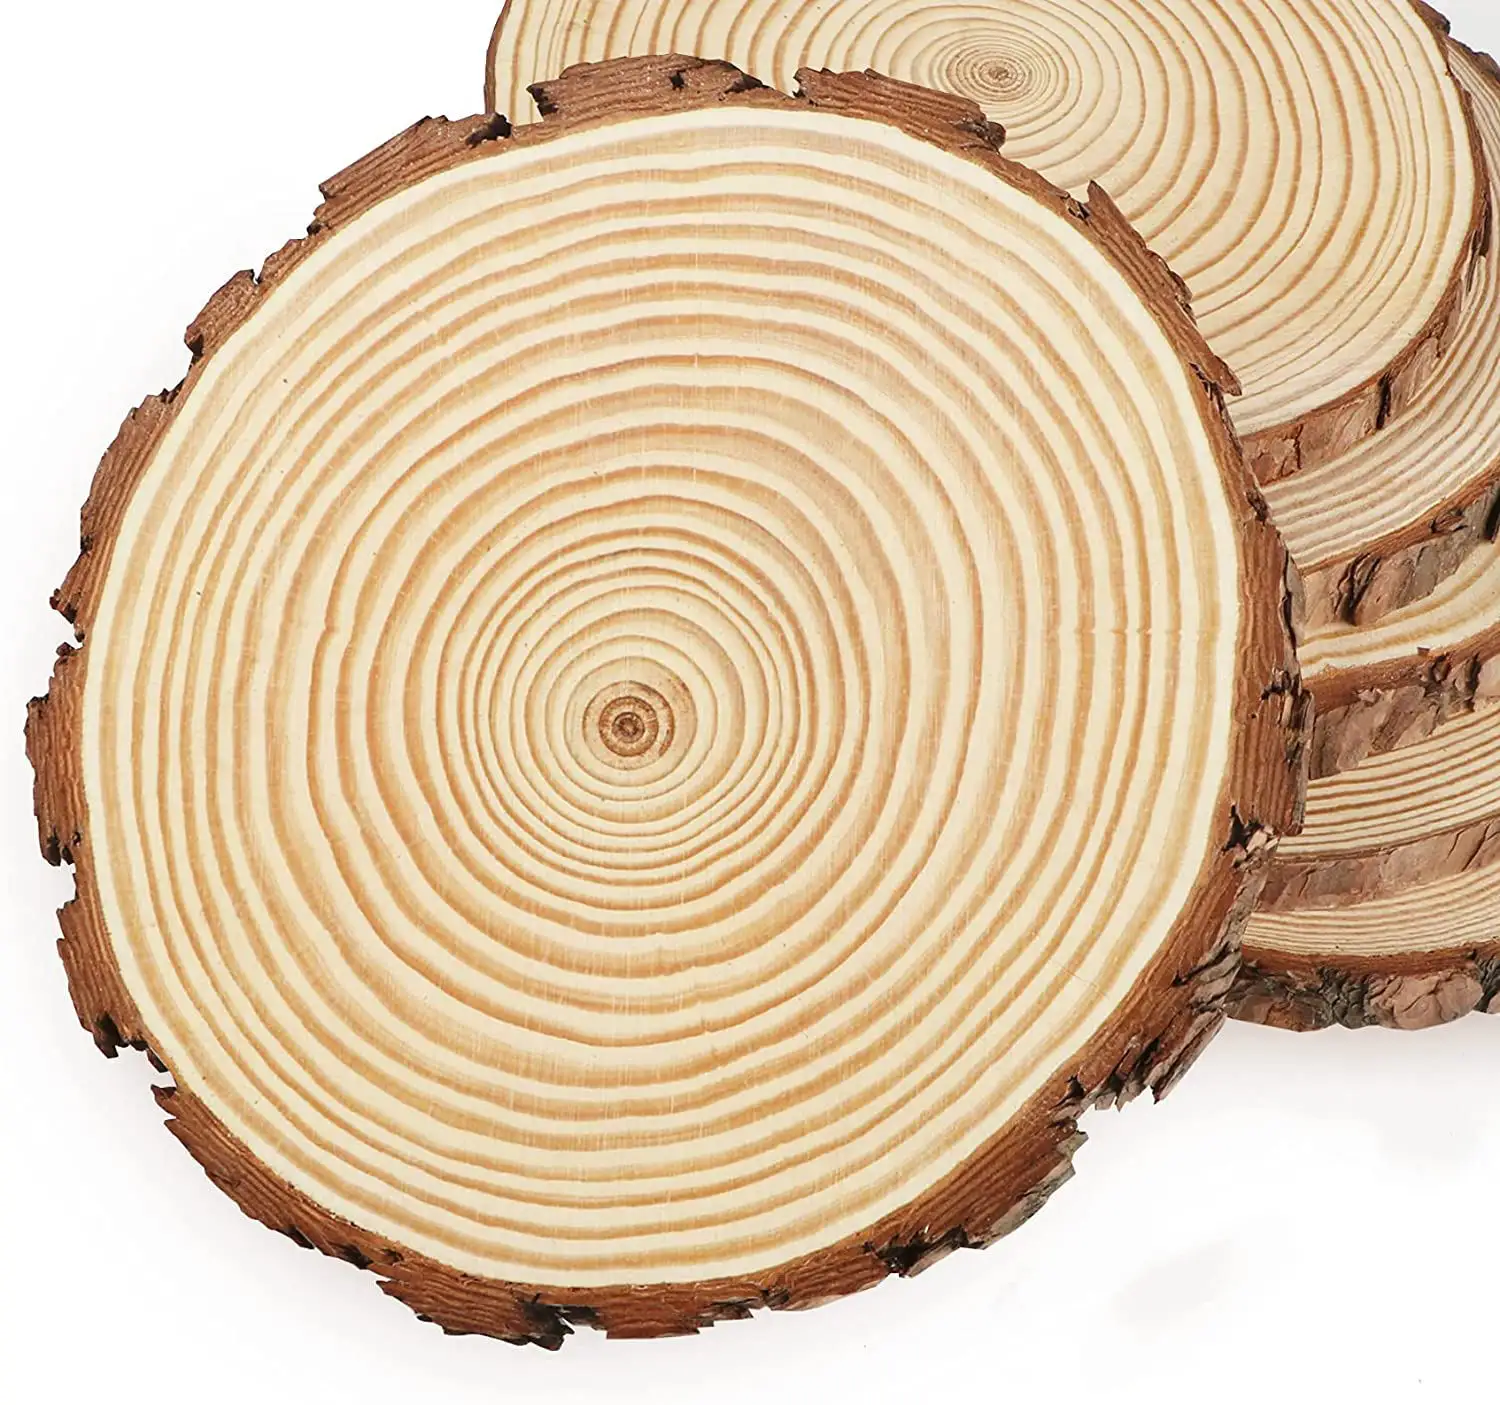 Rodajas de madera redondas de pino Natural, círculos personalizados con discos de tronco de corteza de árbol, grabado láser, pintura artesanal, tallado en madera, 5 uds.